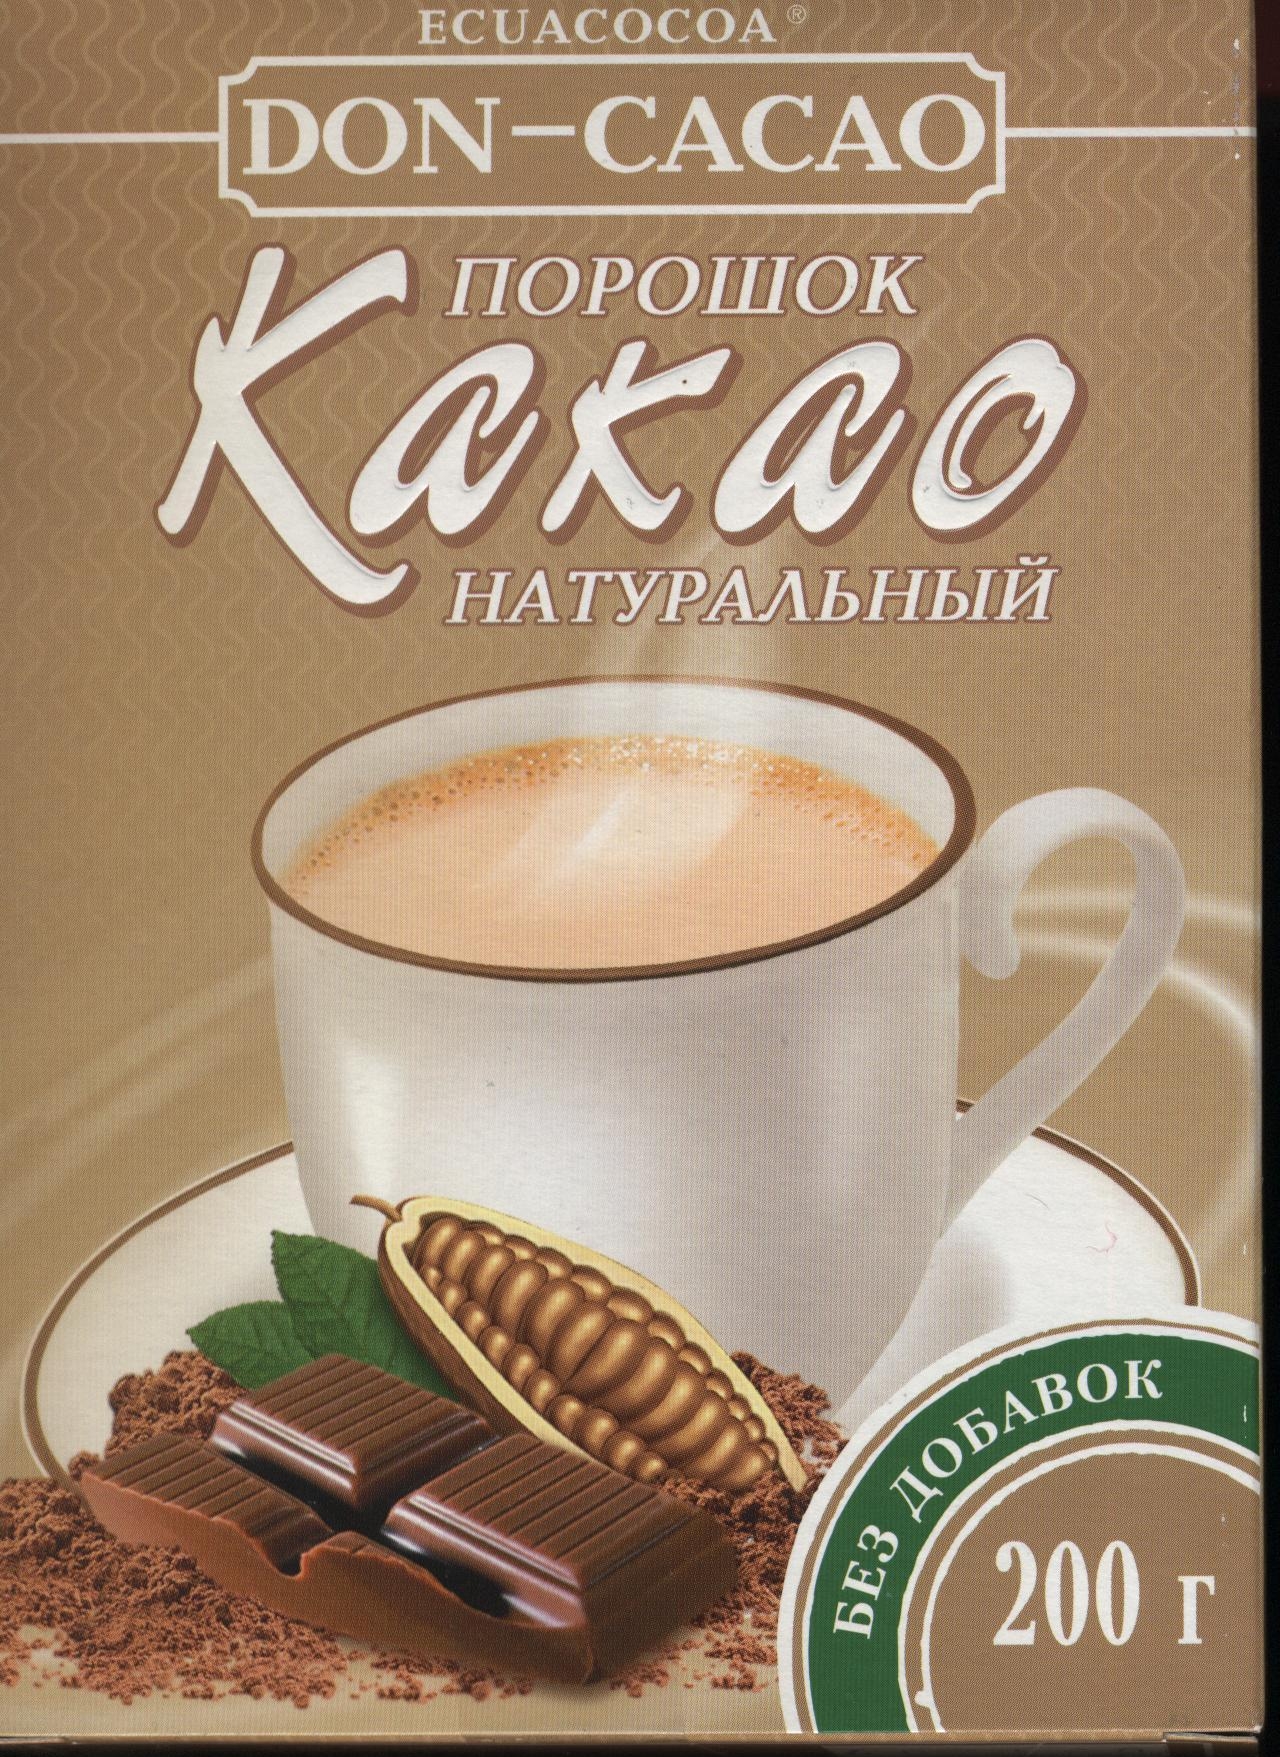 11. «Натуральный какао порошок» от Don-Cacao (Ecuacocoa)